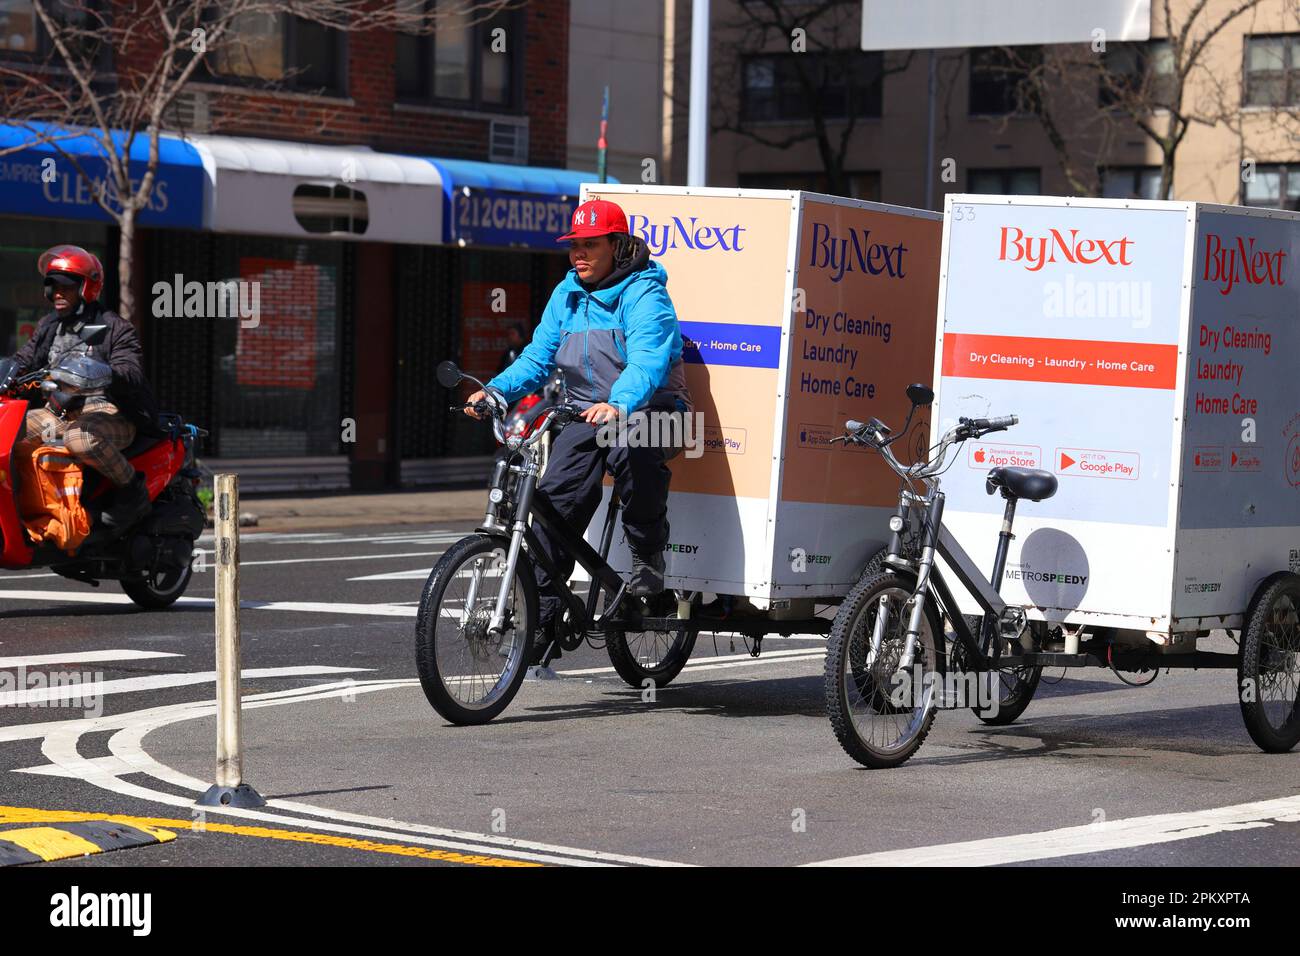 Un mensajero de bicicleta de entrega de lavandería y limpieza en seco ByNext en un triciclo de carga eléctrico de asistencia a pedales, bicicleta de carga en la ciudad de Nueva York. Foto de stock